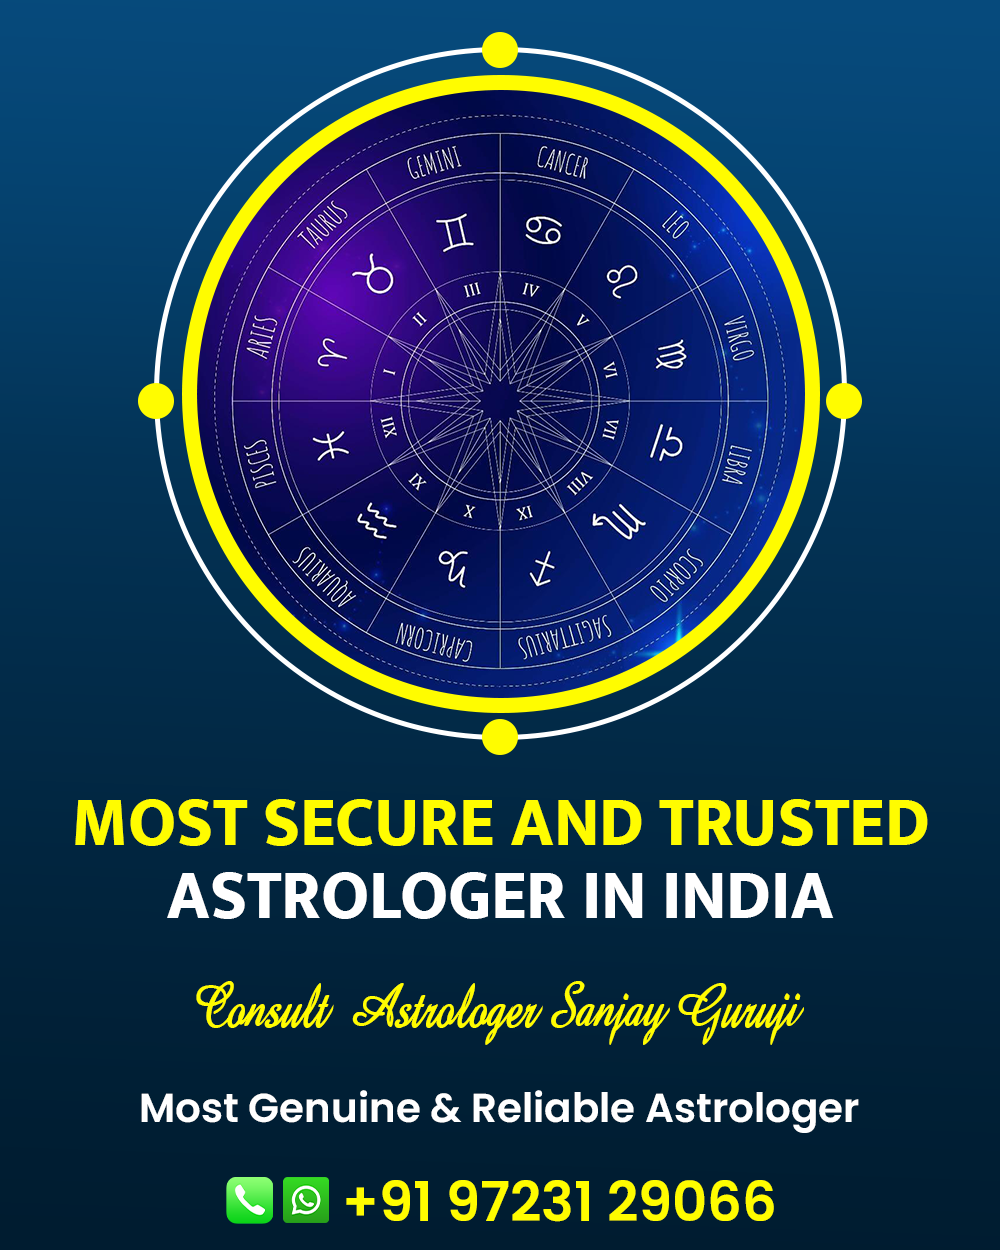 Best Astrologer in Gujarat